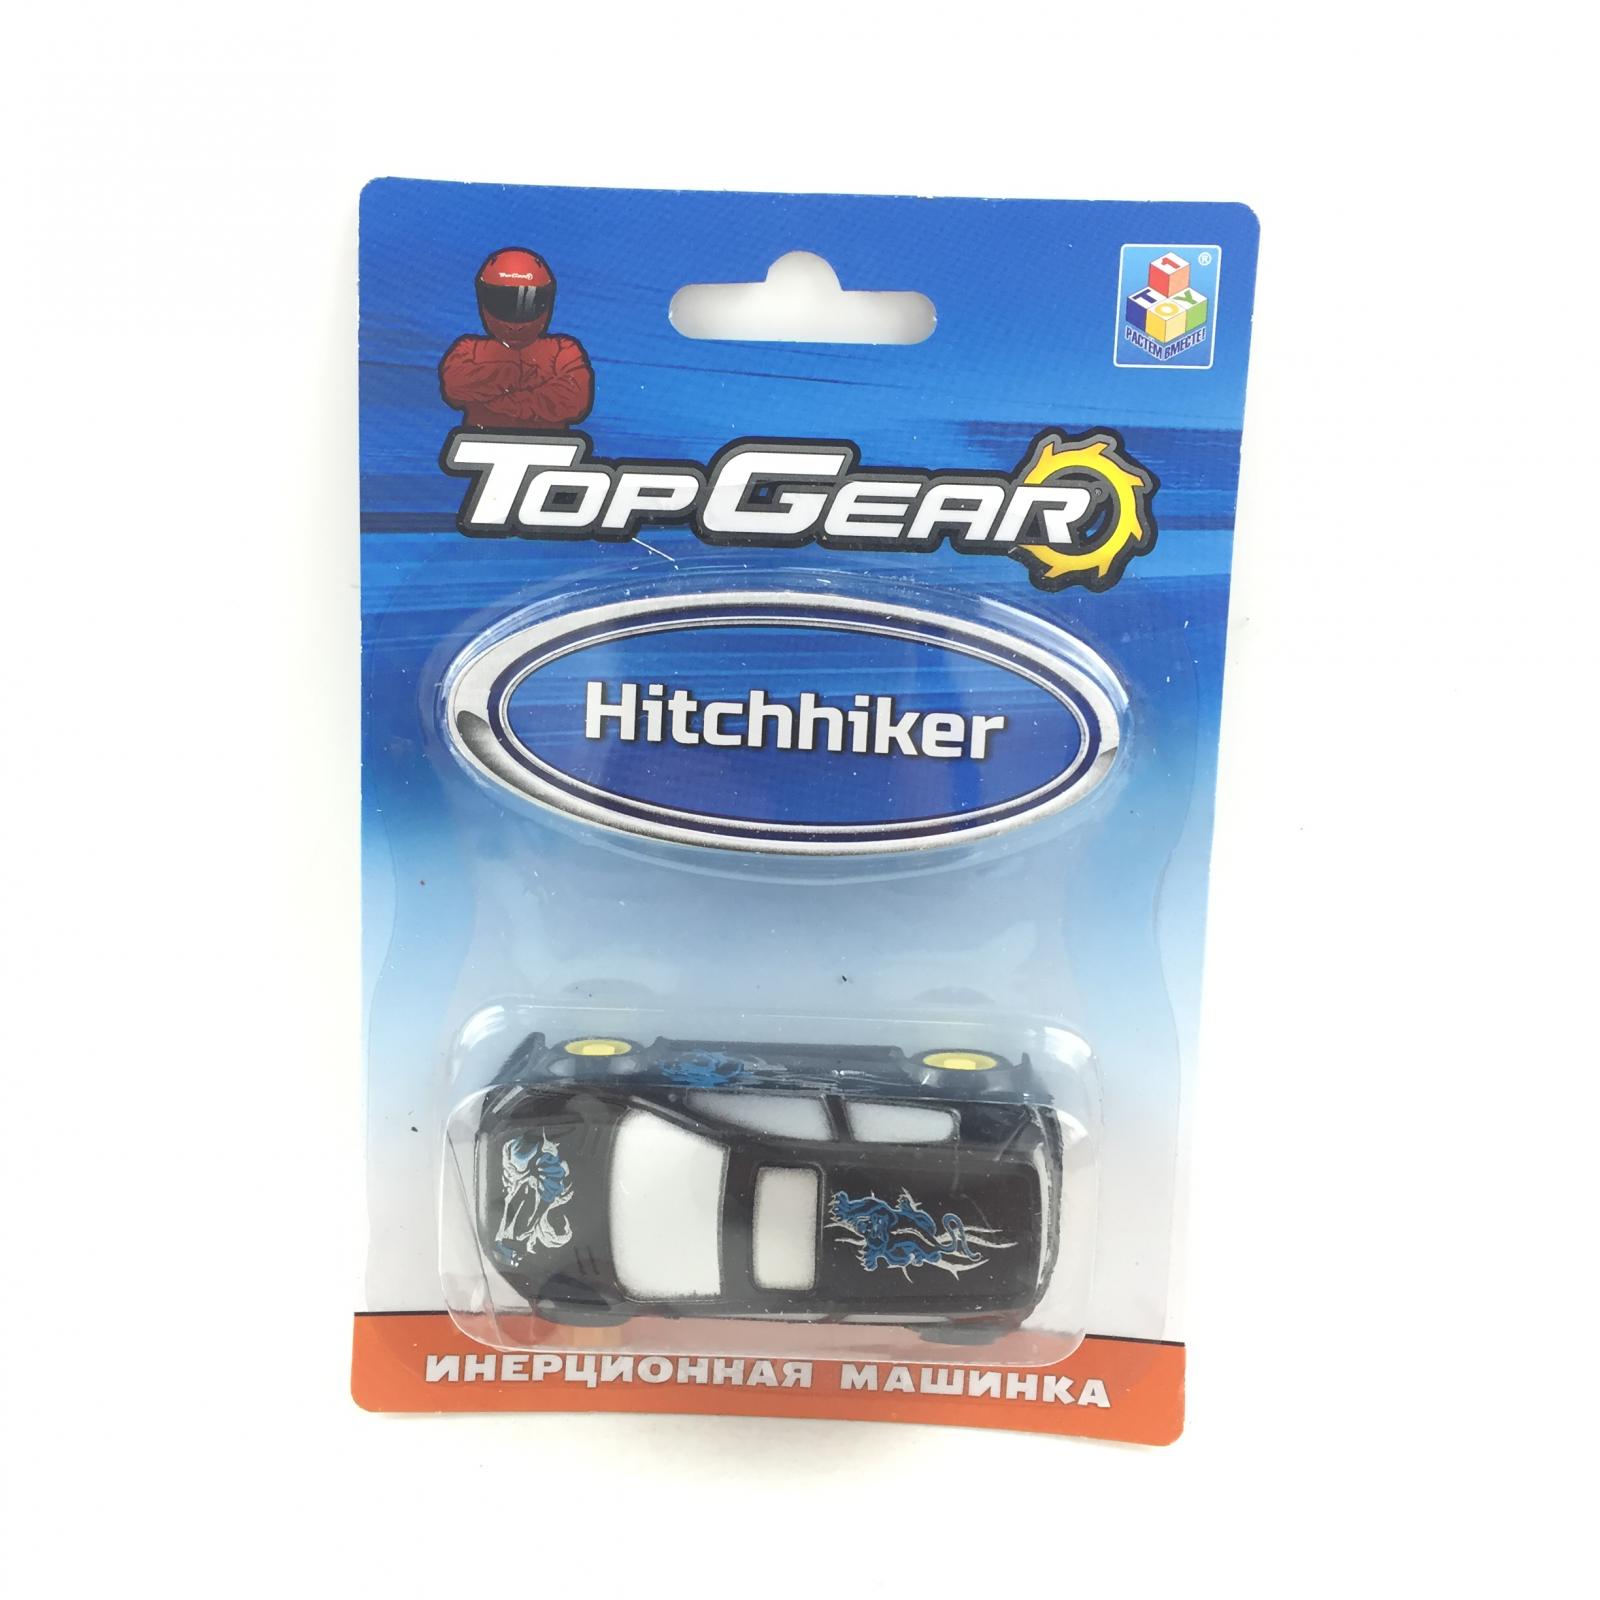 Инерционная машинка Top Gear - Hitchhiker